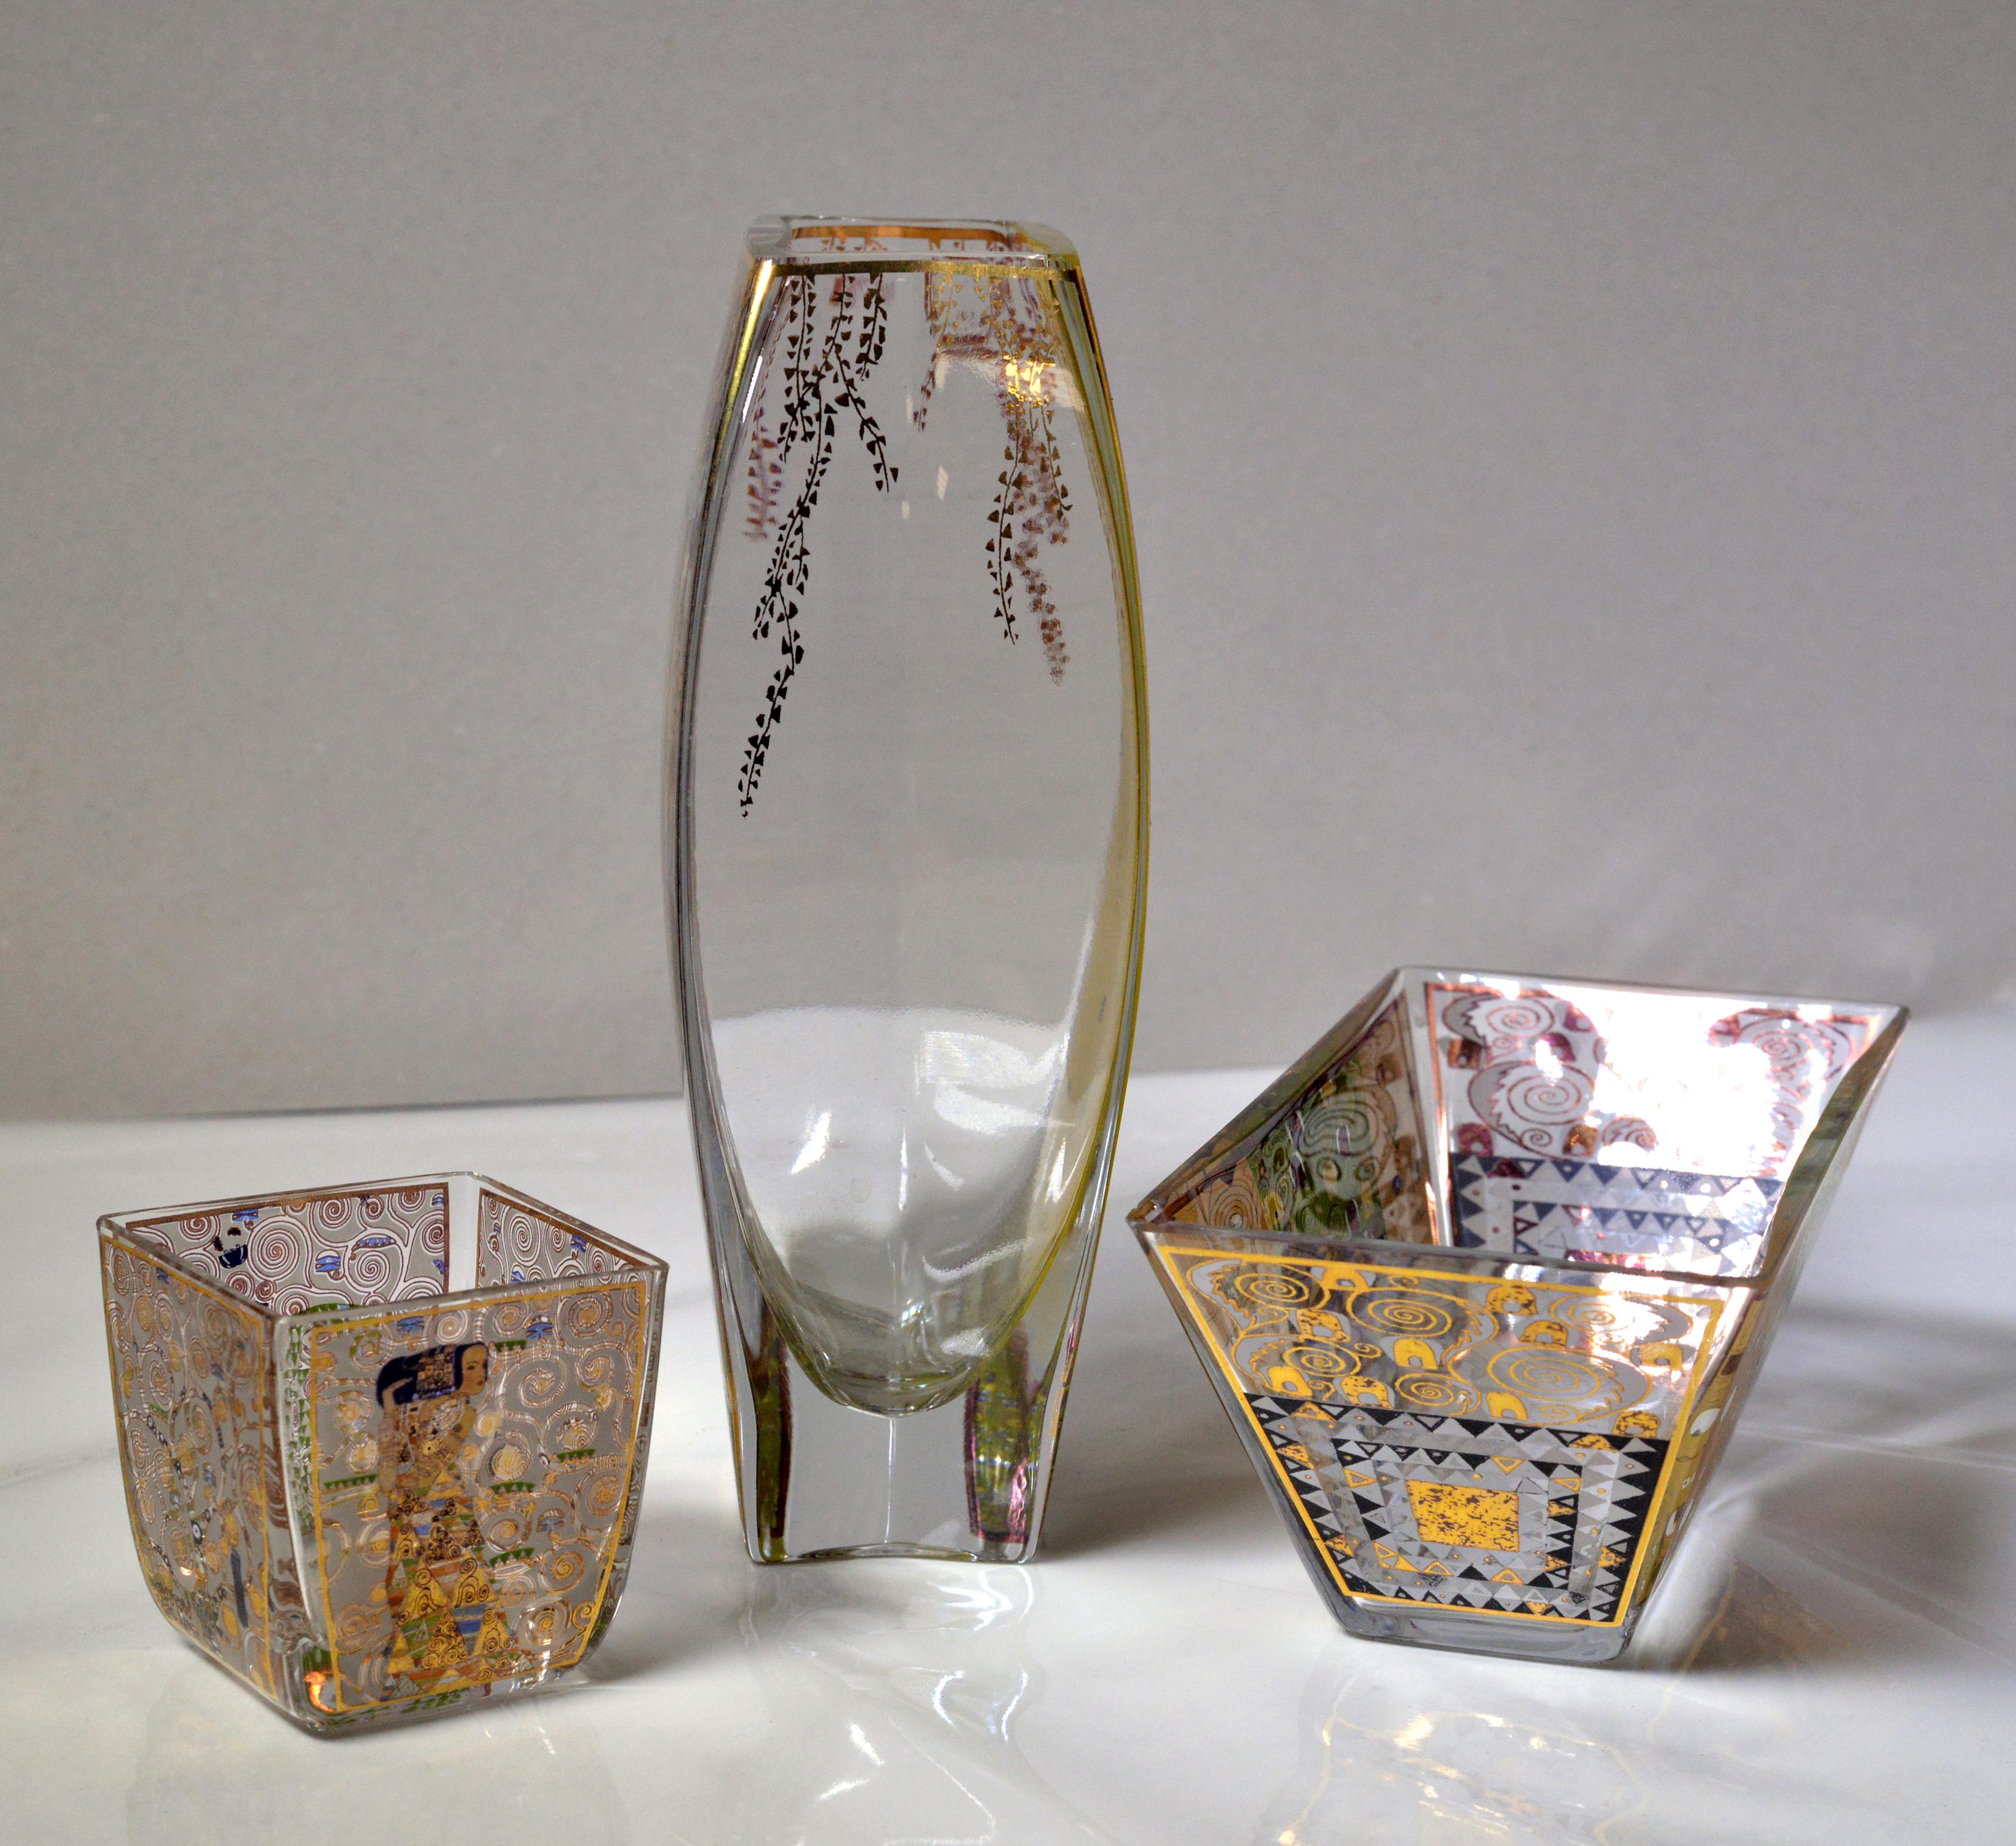 Gustav Klimt in Goebel Artis Orbis Vintage 3 pcs Glass Ensemble Vase Bowl Set In Good Condition For Sale In Sweden, SE